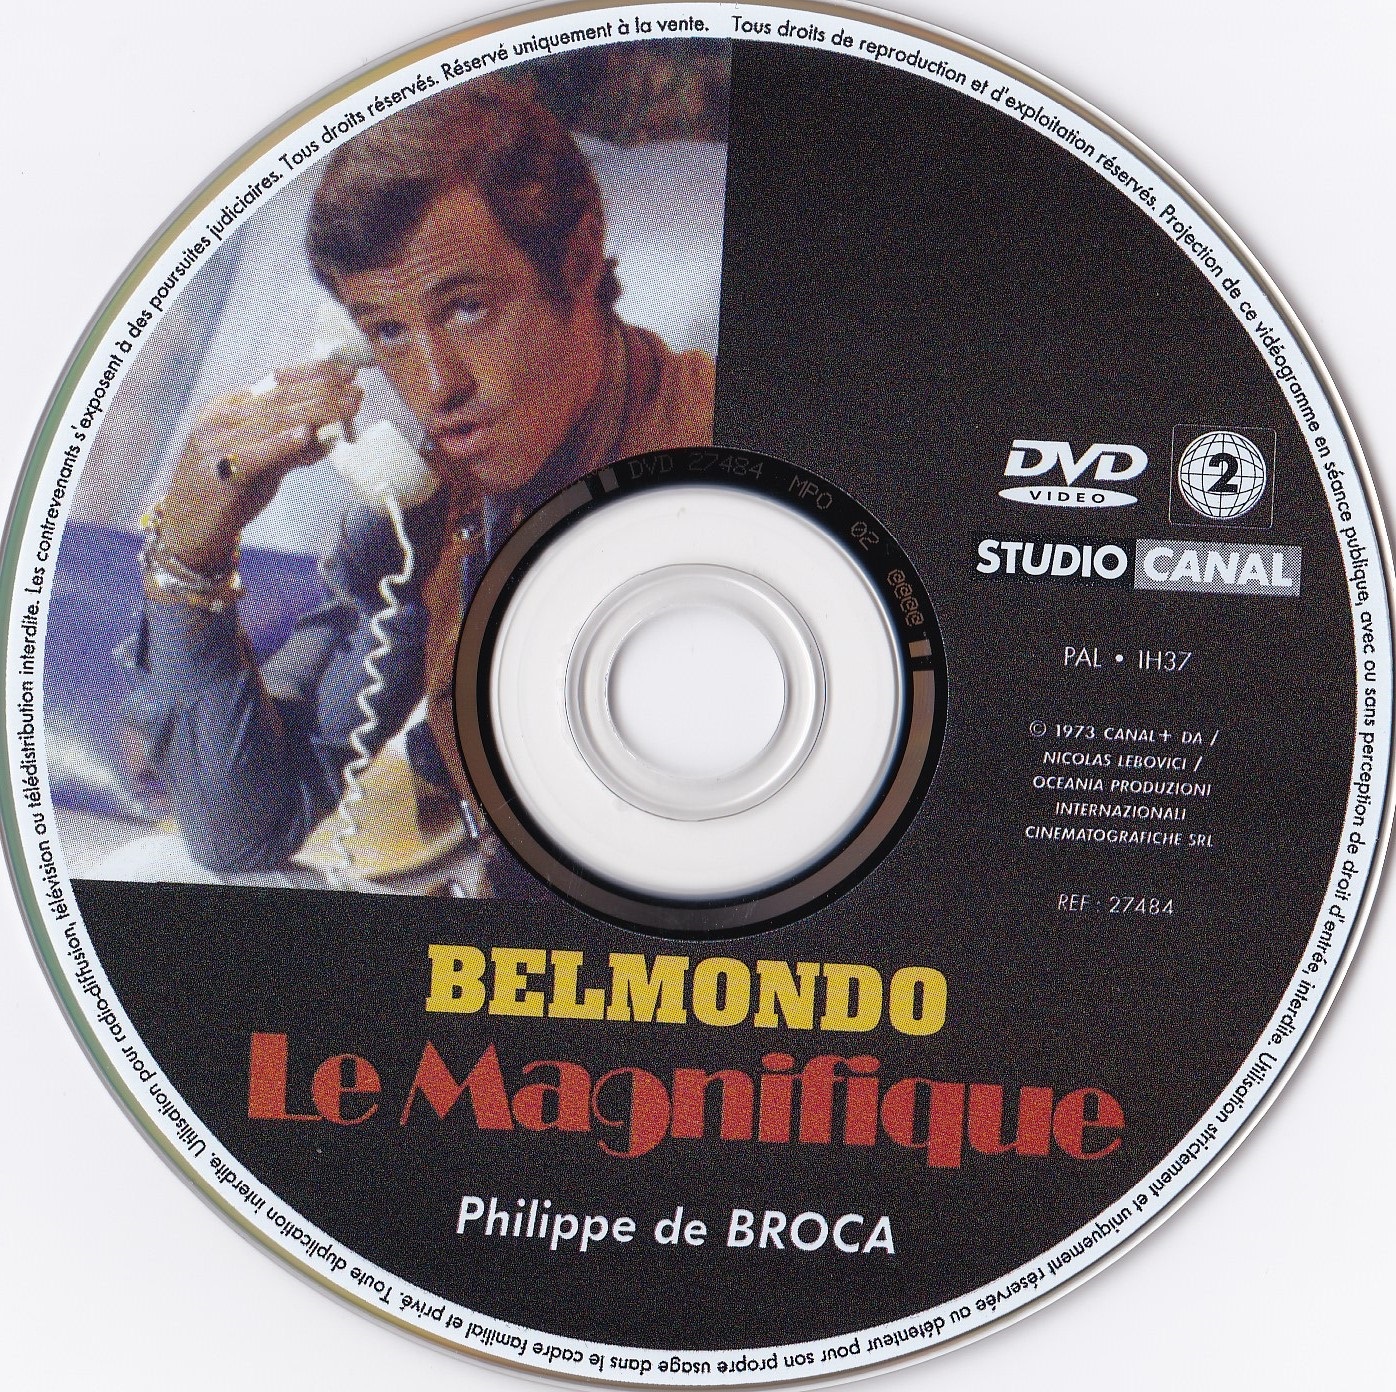 Le magnifique (Belmondo) v2